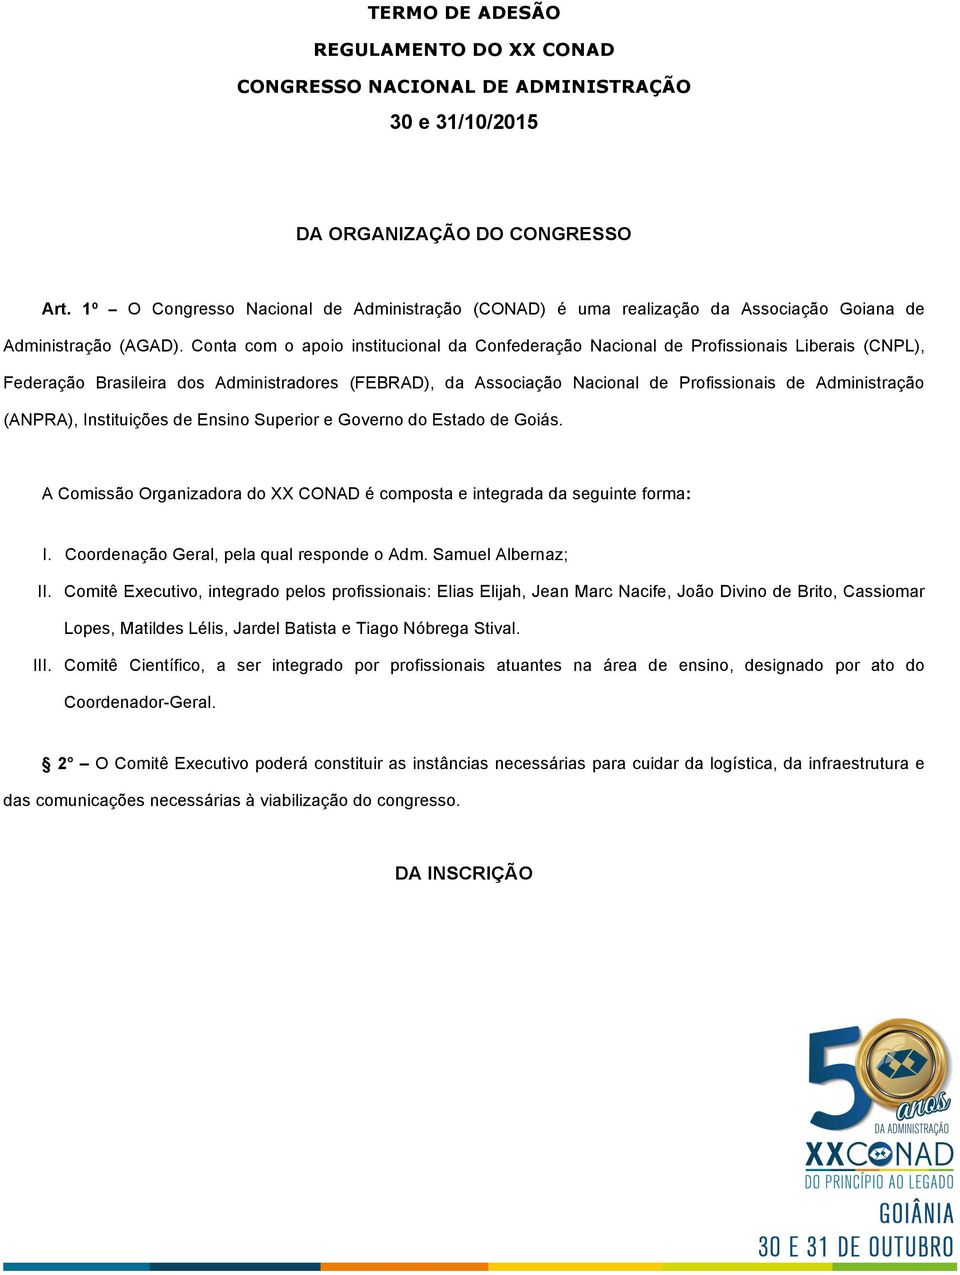 Conta com o apoio institucional da Confederação Nacional de Profissionais Liberais (CNPL), Federação Brasileira dos Administradores (FEBRAD), da Associação Nacional de Profissionais de Administração